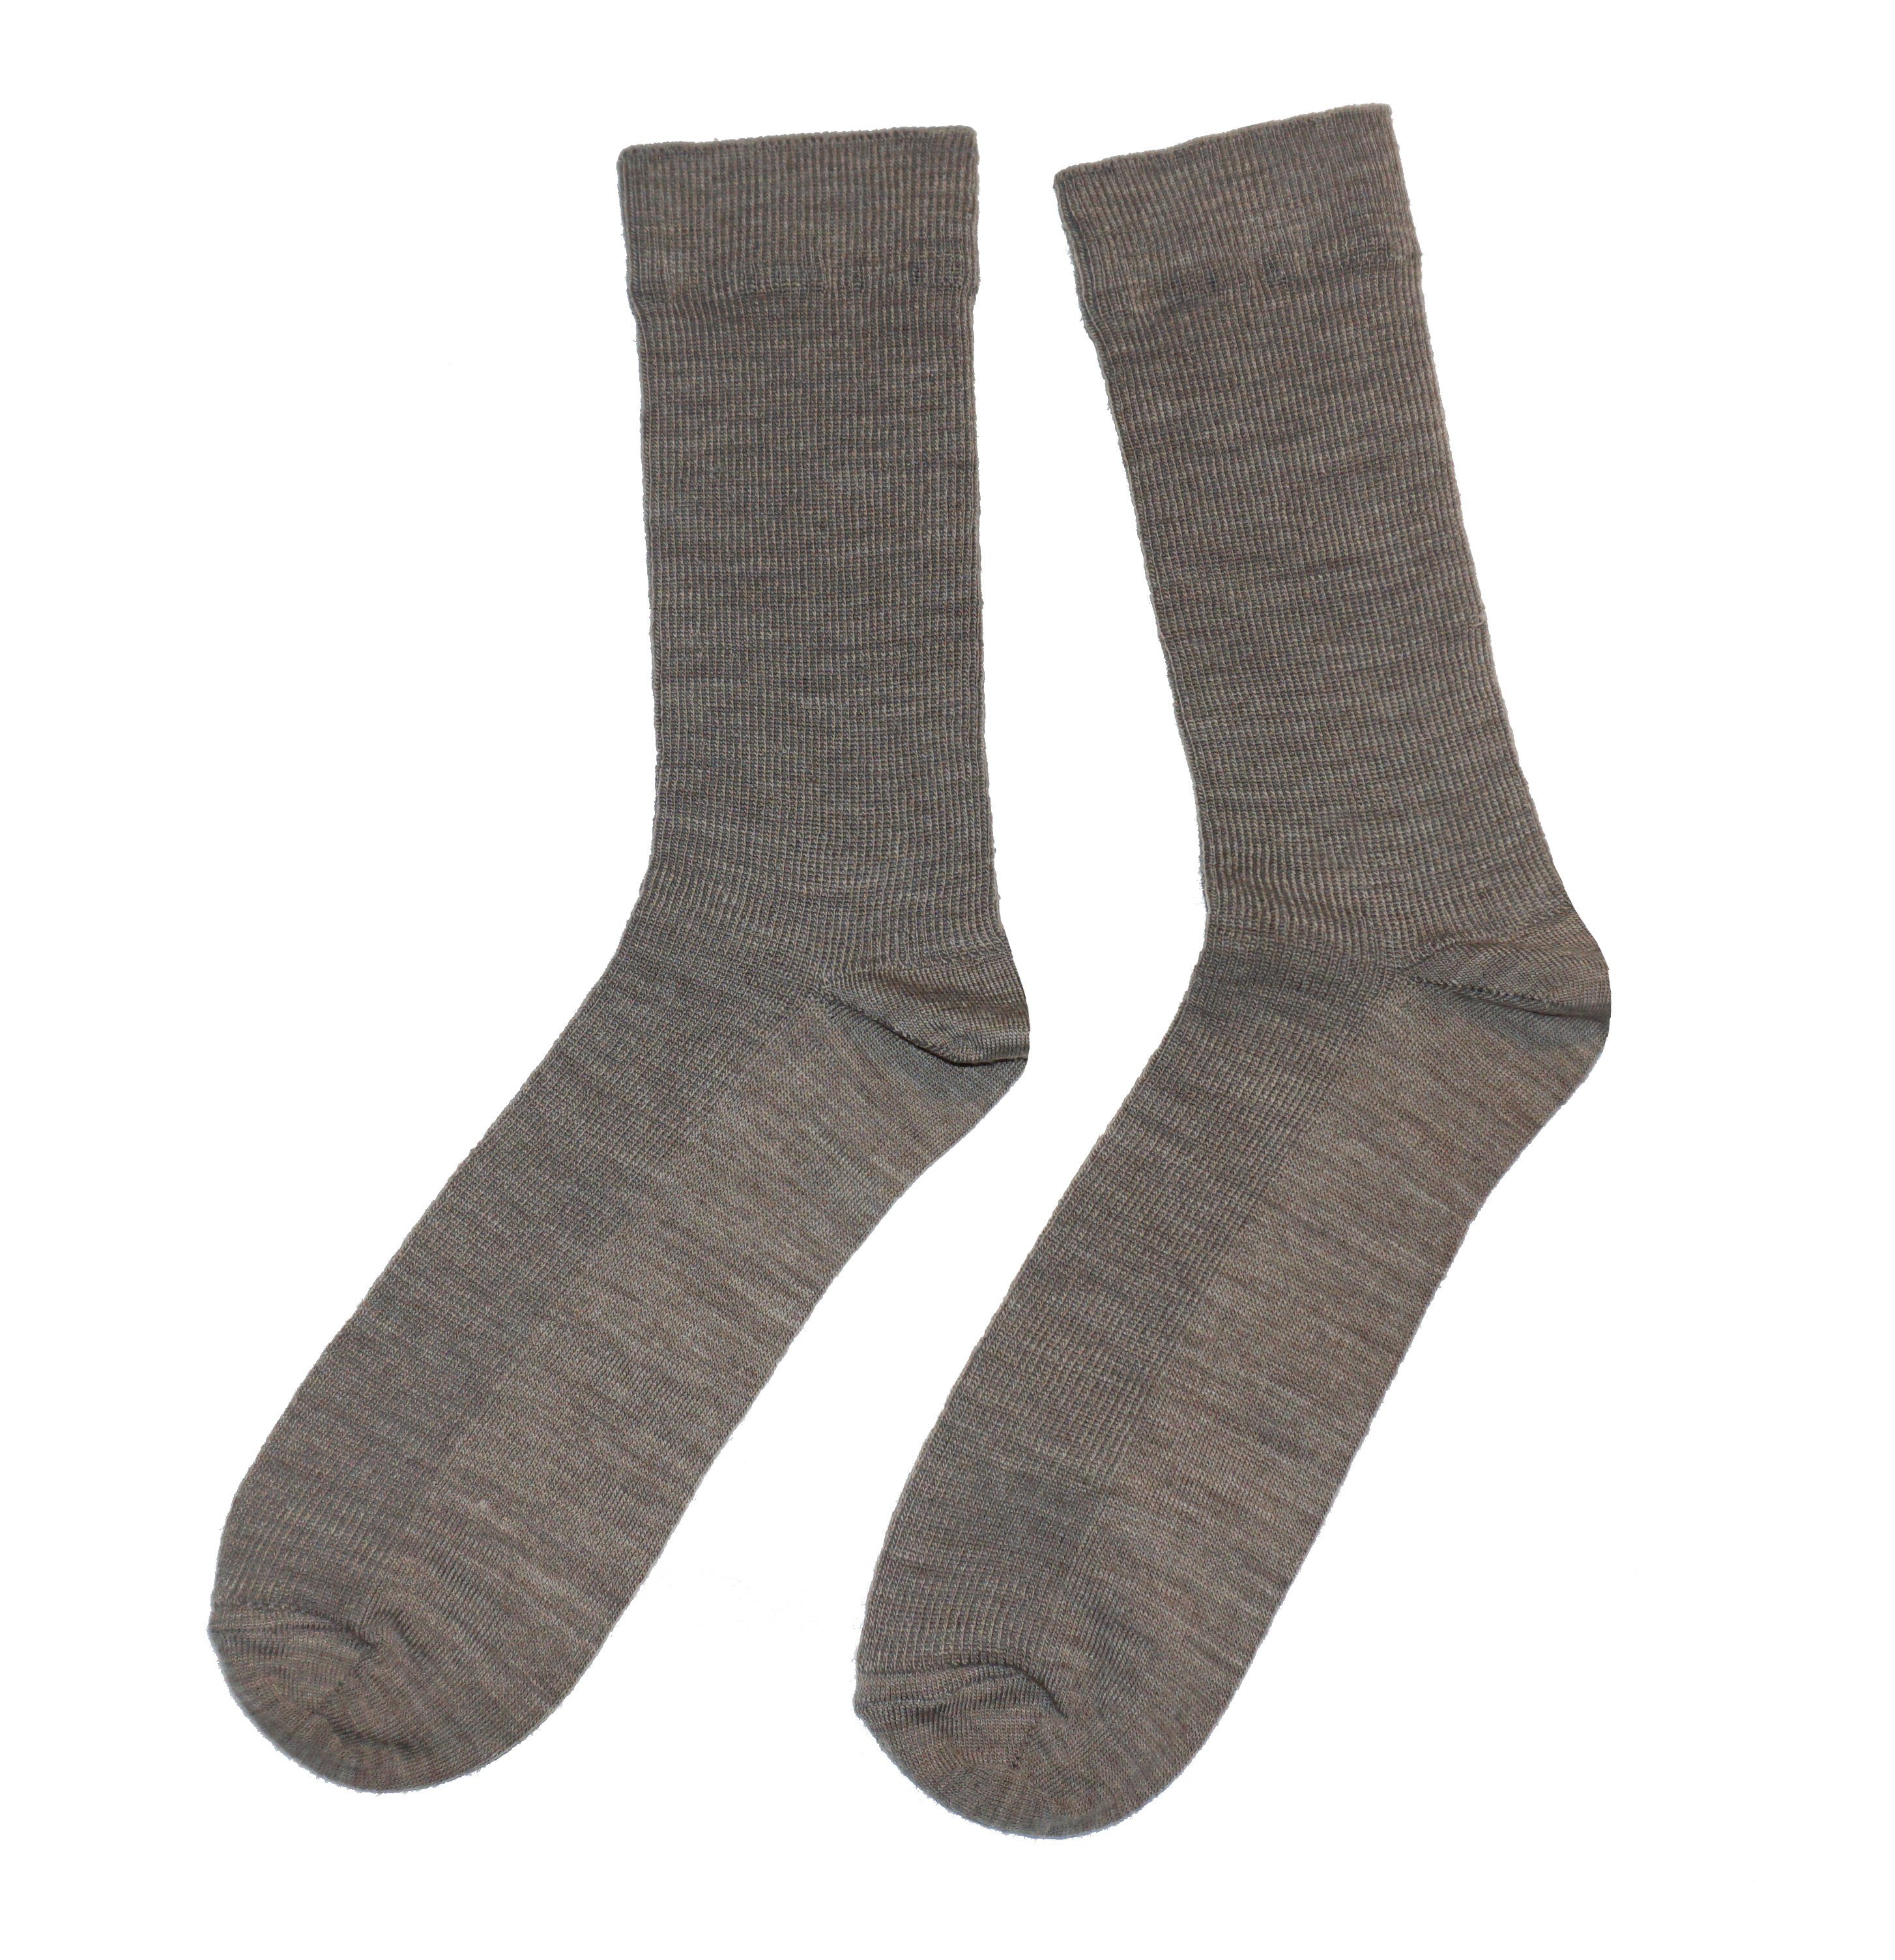 Wäsche/Bademode Socken WERI SPEZIALS Strumpfhersteller GmbH Socken Herren Socken 1:1 Rippe aus Wolle